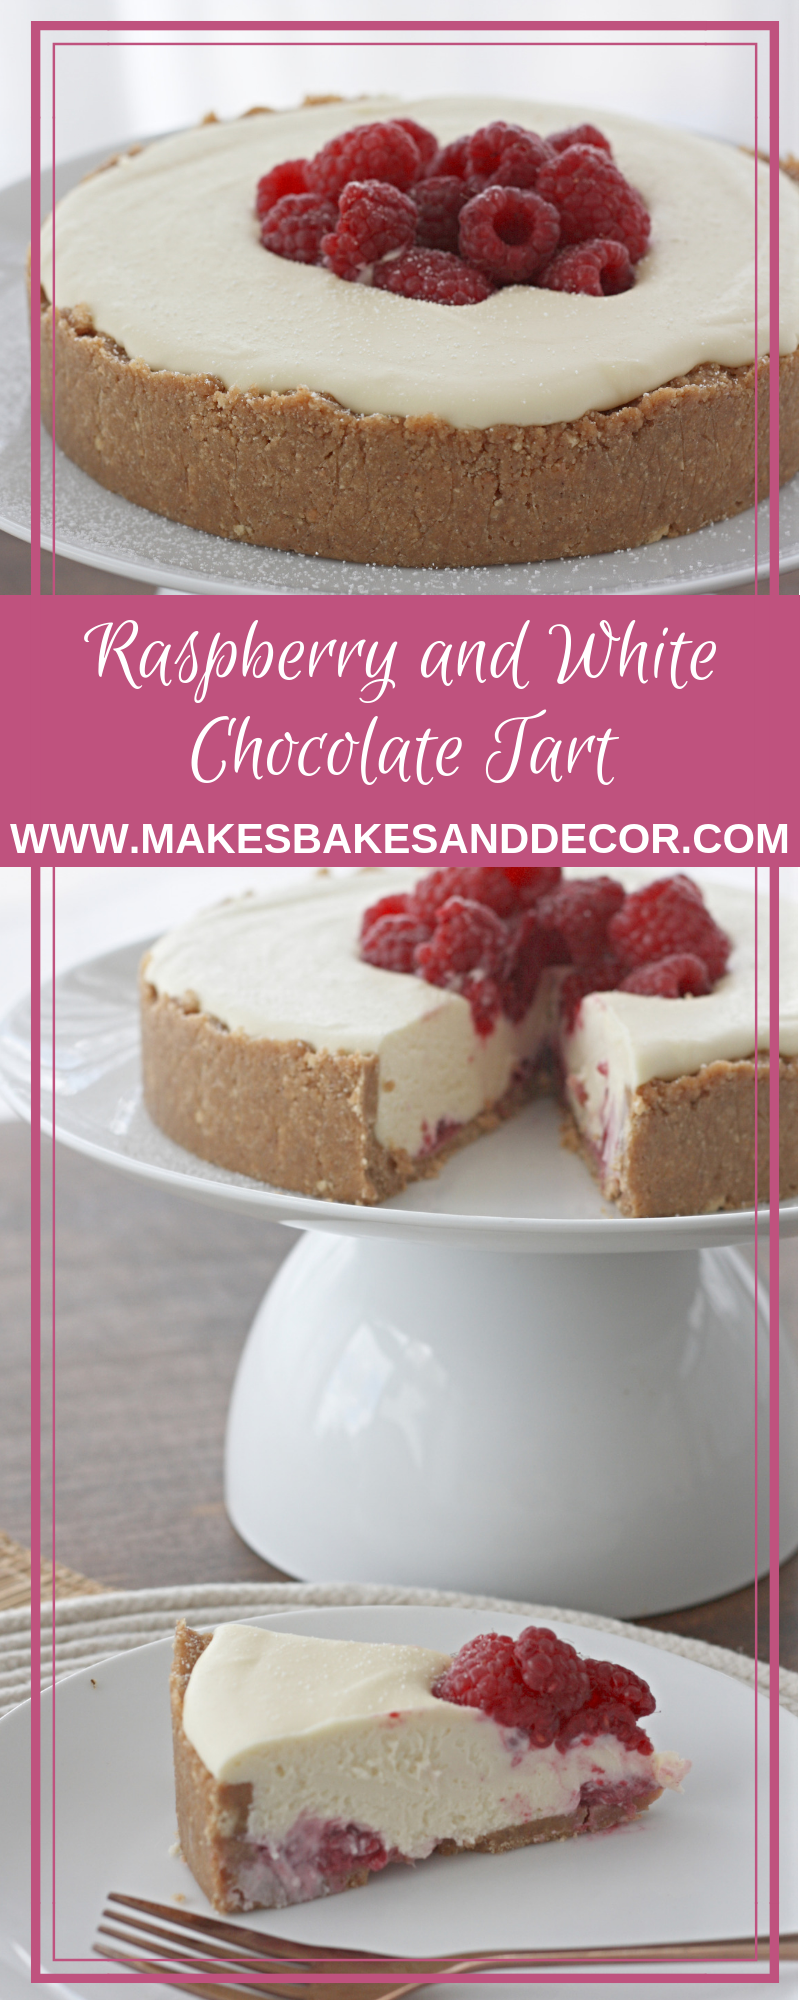 raspberry and white chocolate tart